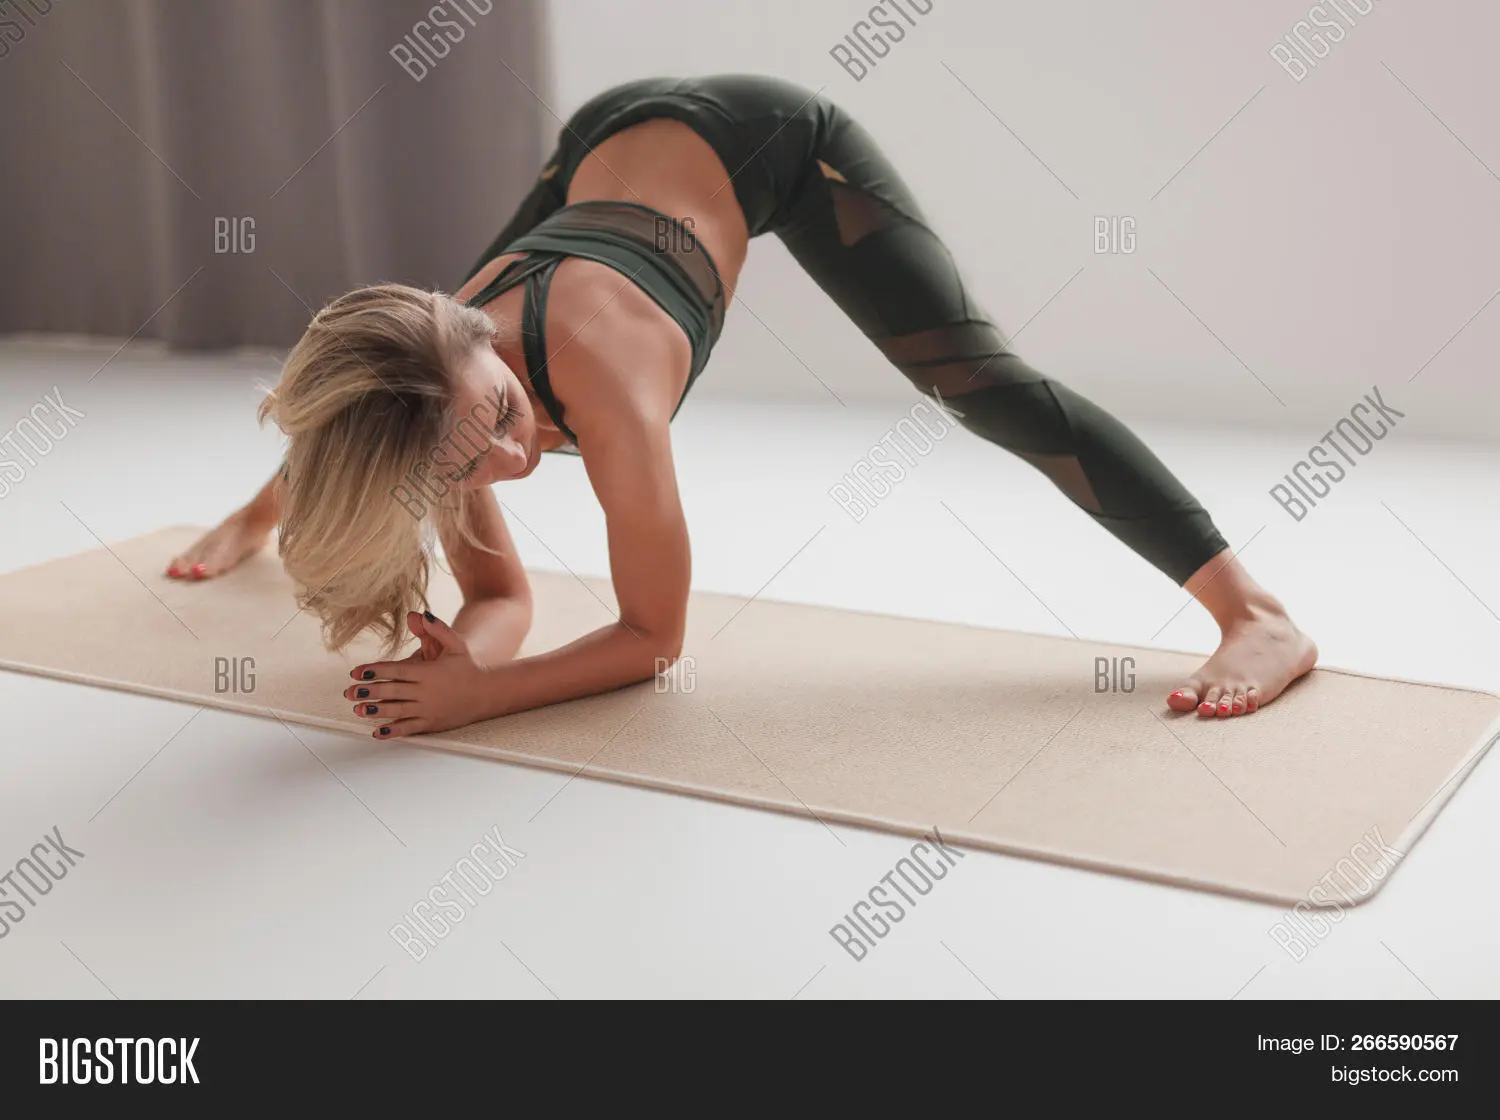 yoga spread legs - What is wide leg fold in Sanskrit